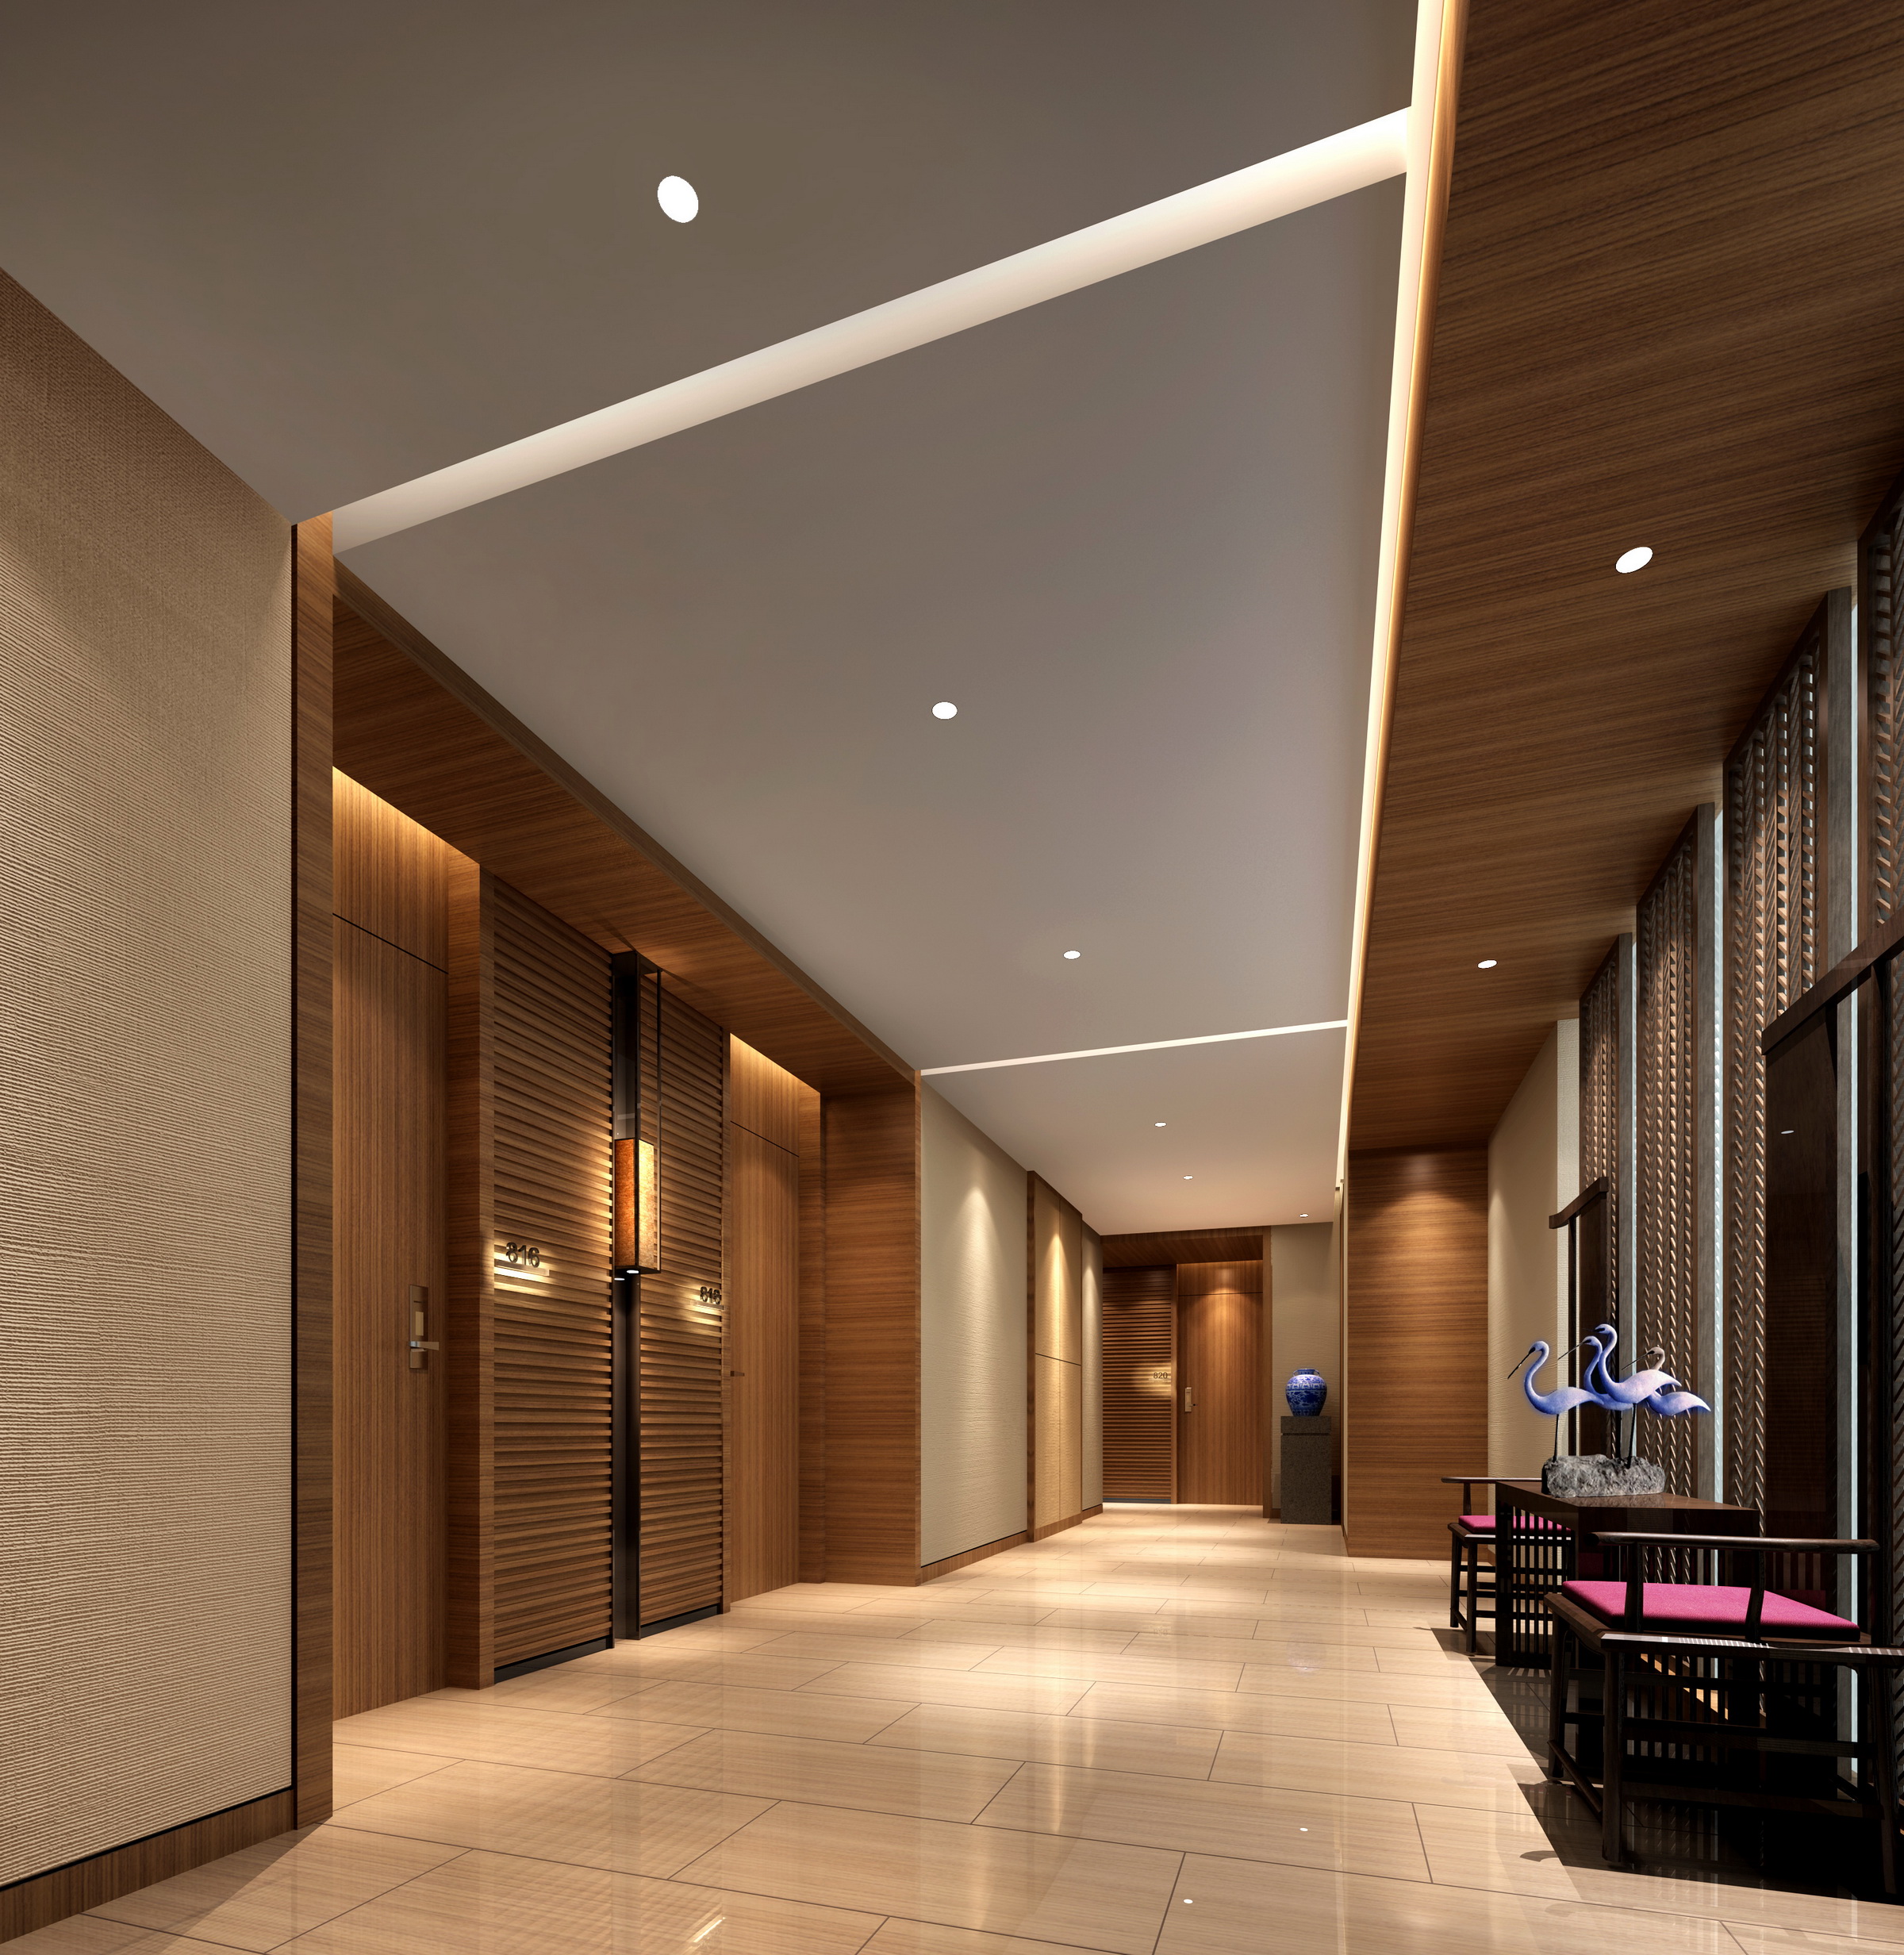 [三亚]豪华之最国际连锁品牌新中式五星级商务度假酒店装修施工图(含